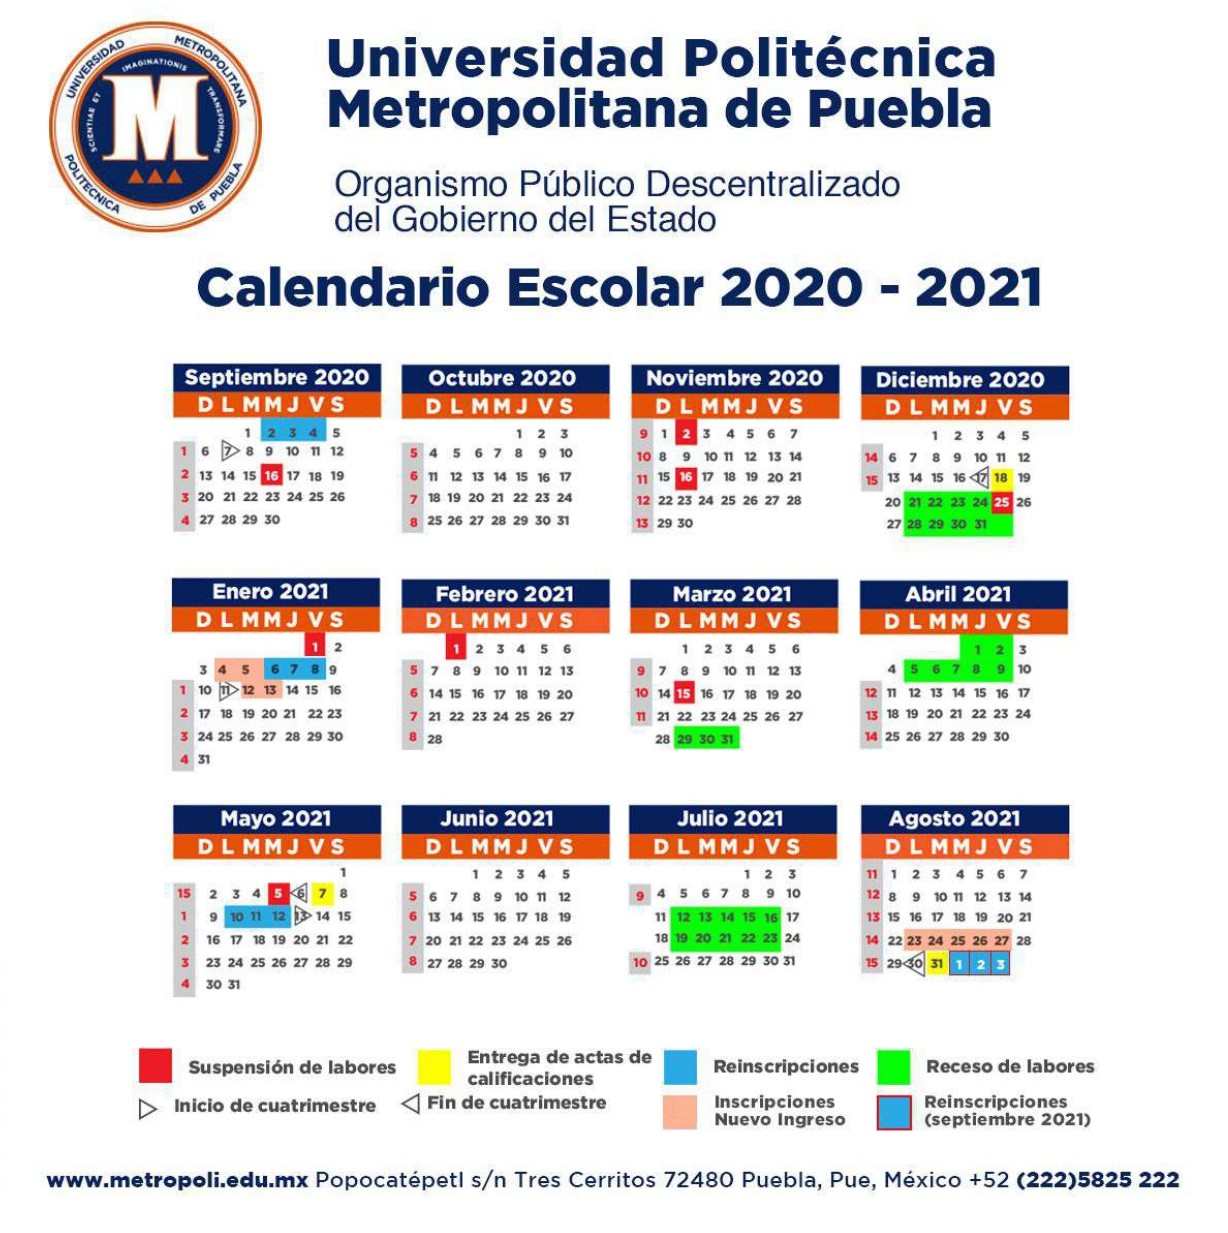 Calendario Universidad Politécnica Metropolitana de Puebla